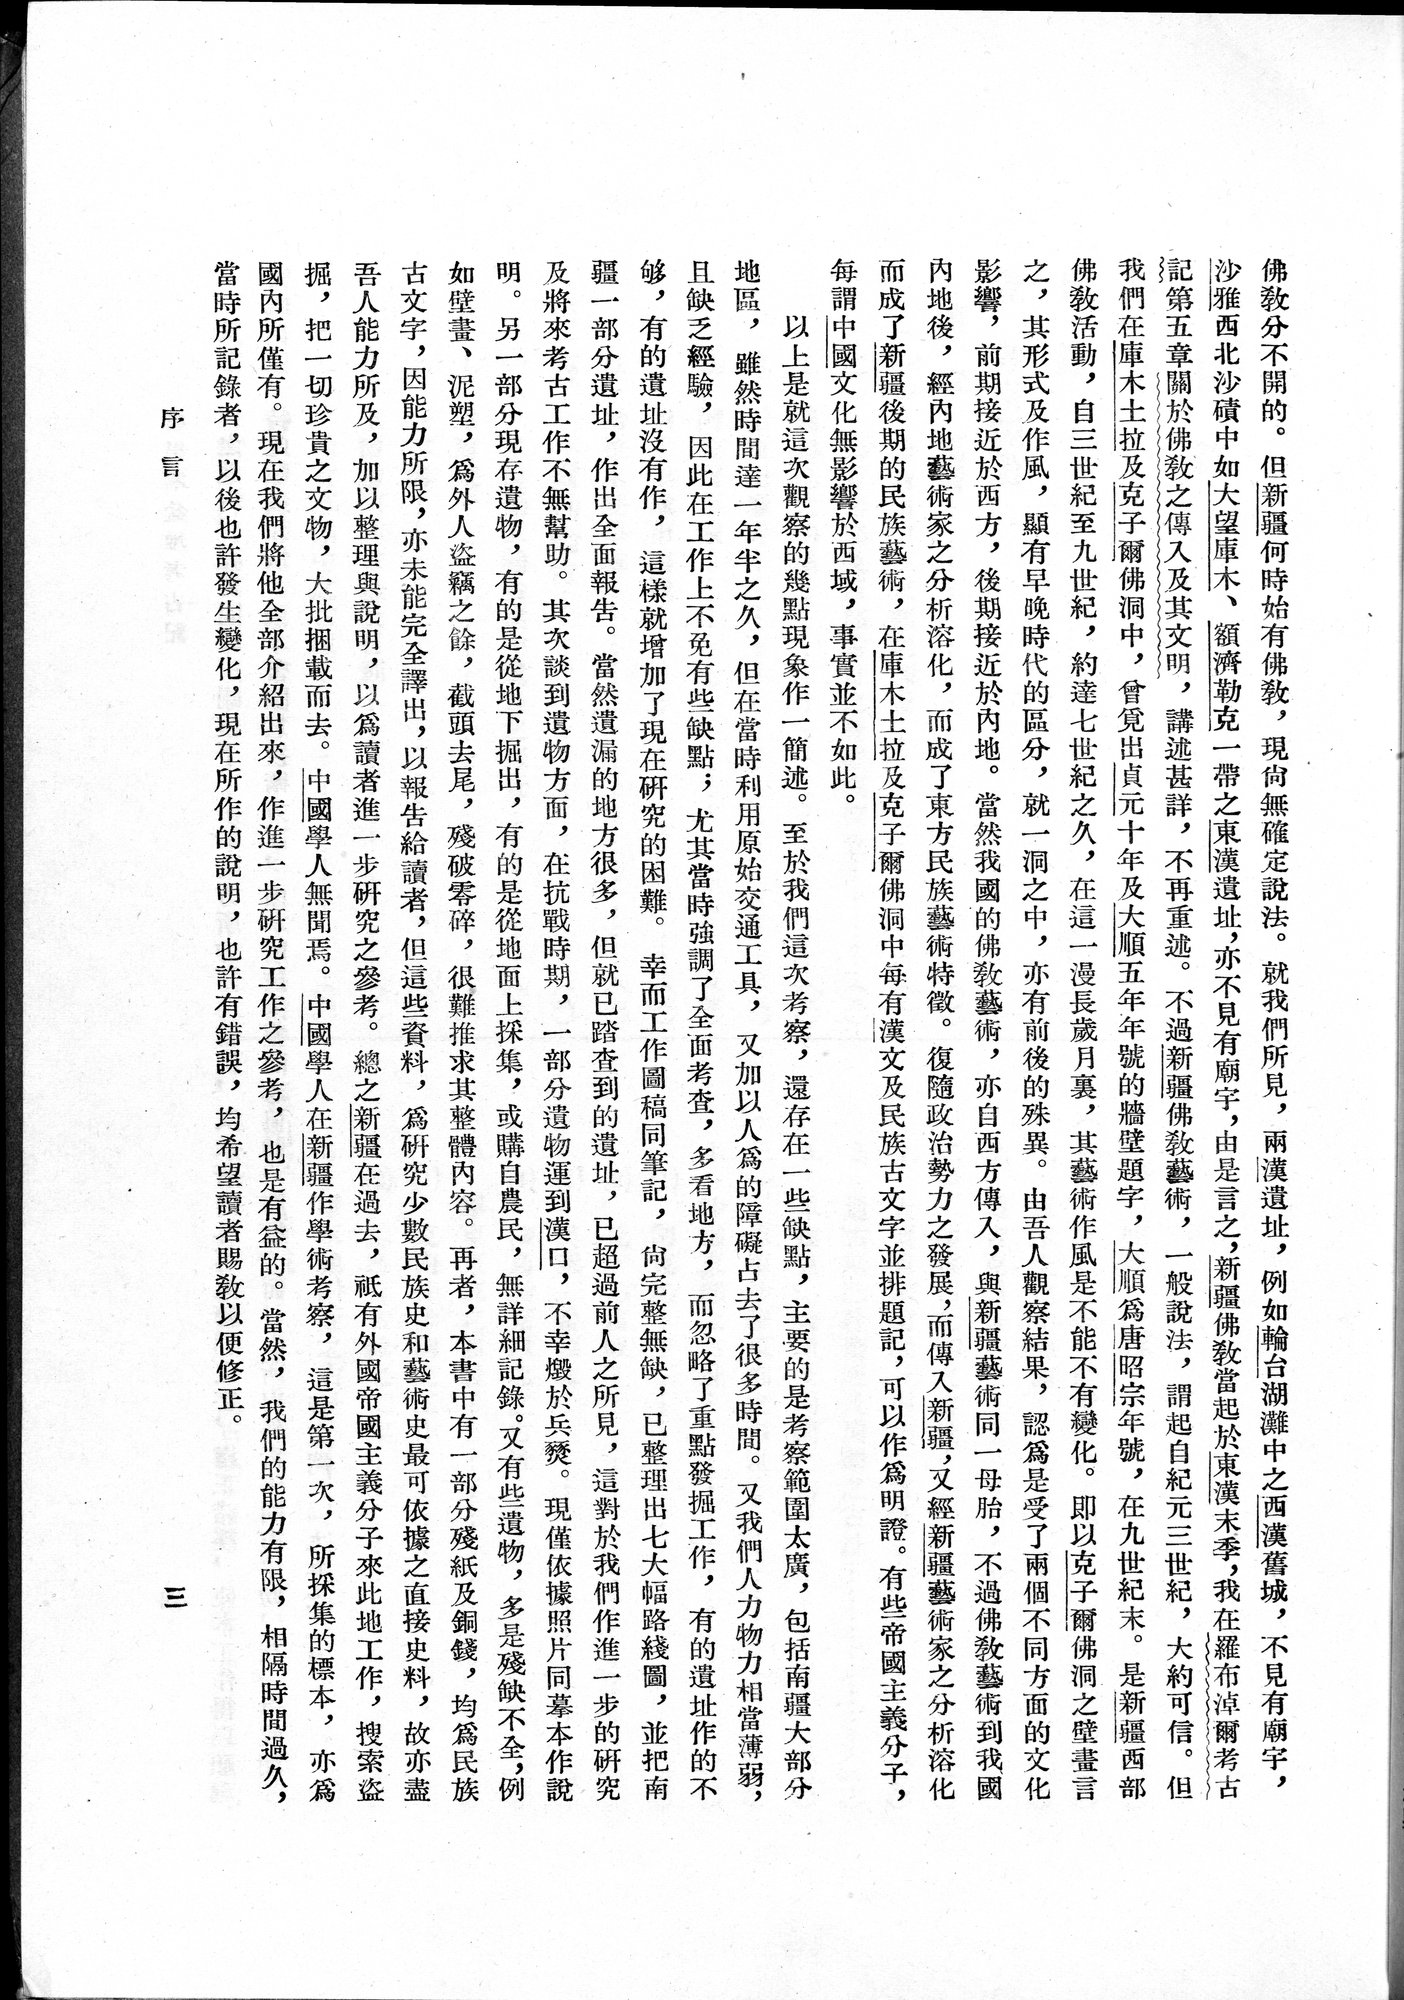 塔里木盆地考古記 : vol.1 / Page 9 (Grayscale High Resolution Image)